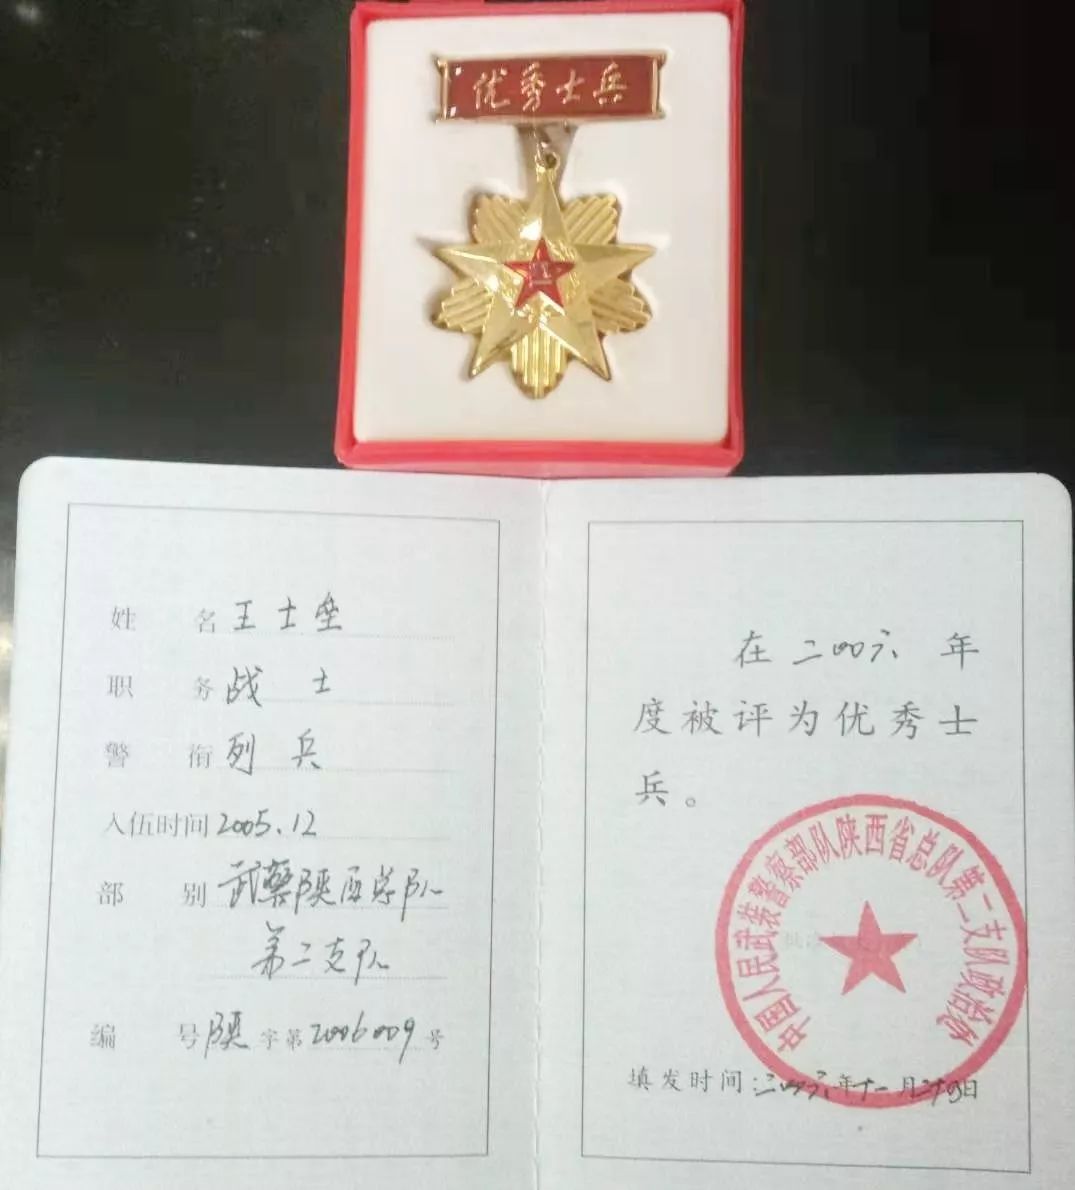 2005年进入陕西省西安市武警二支队服役两年,服役期间获"优秀士兵"